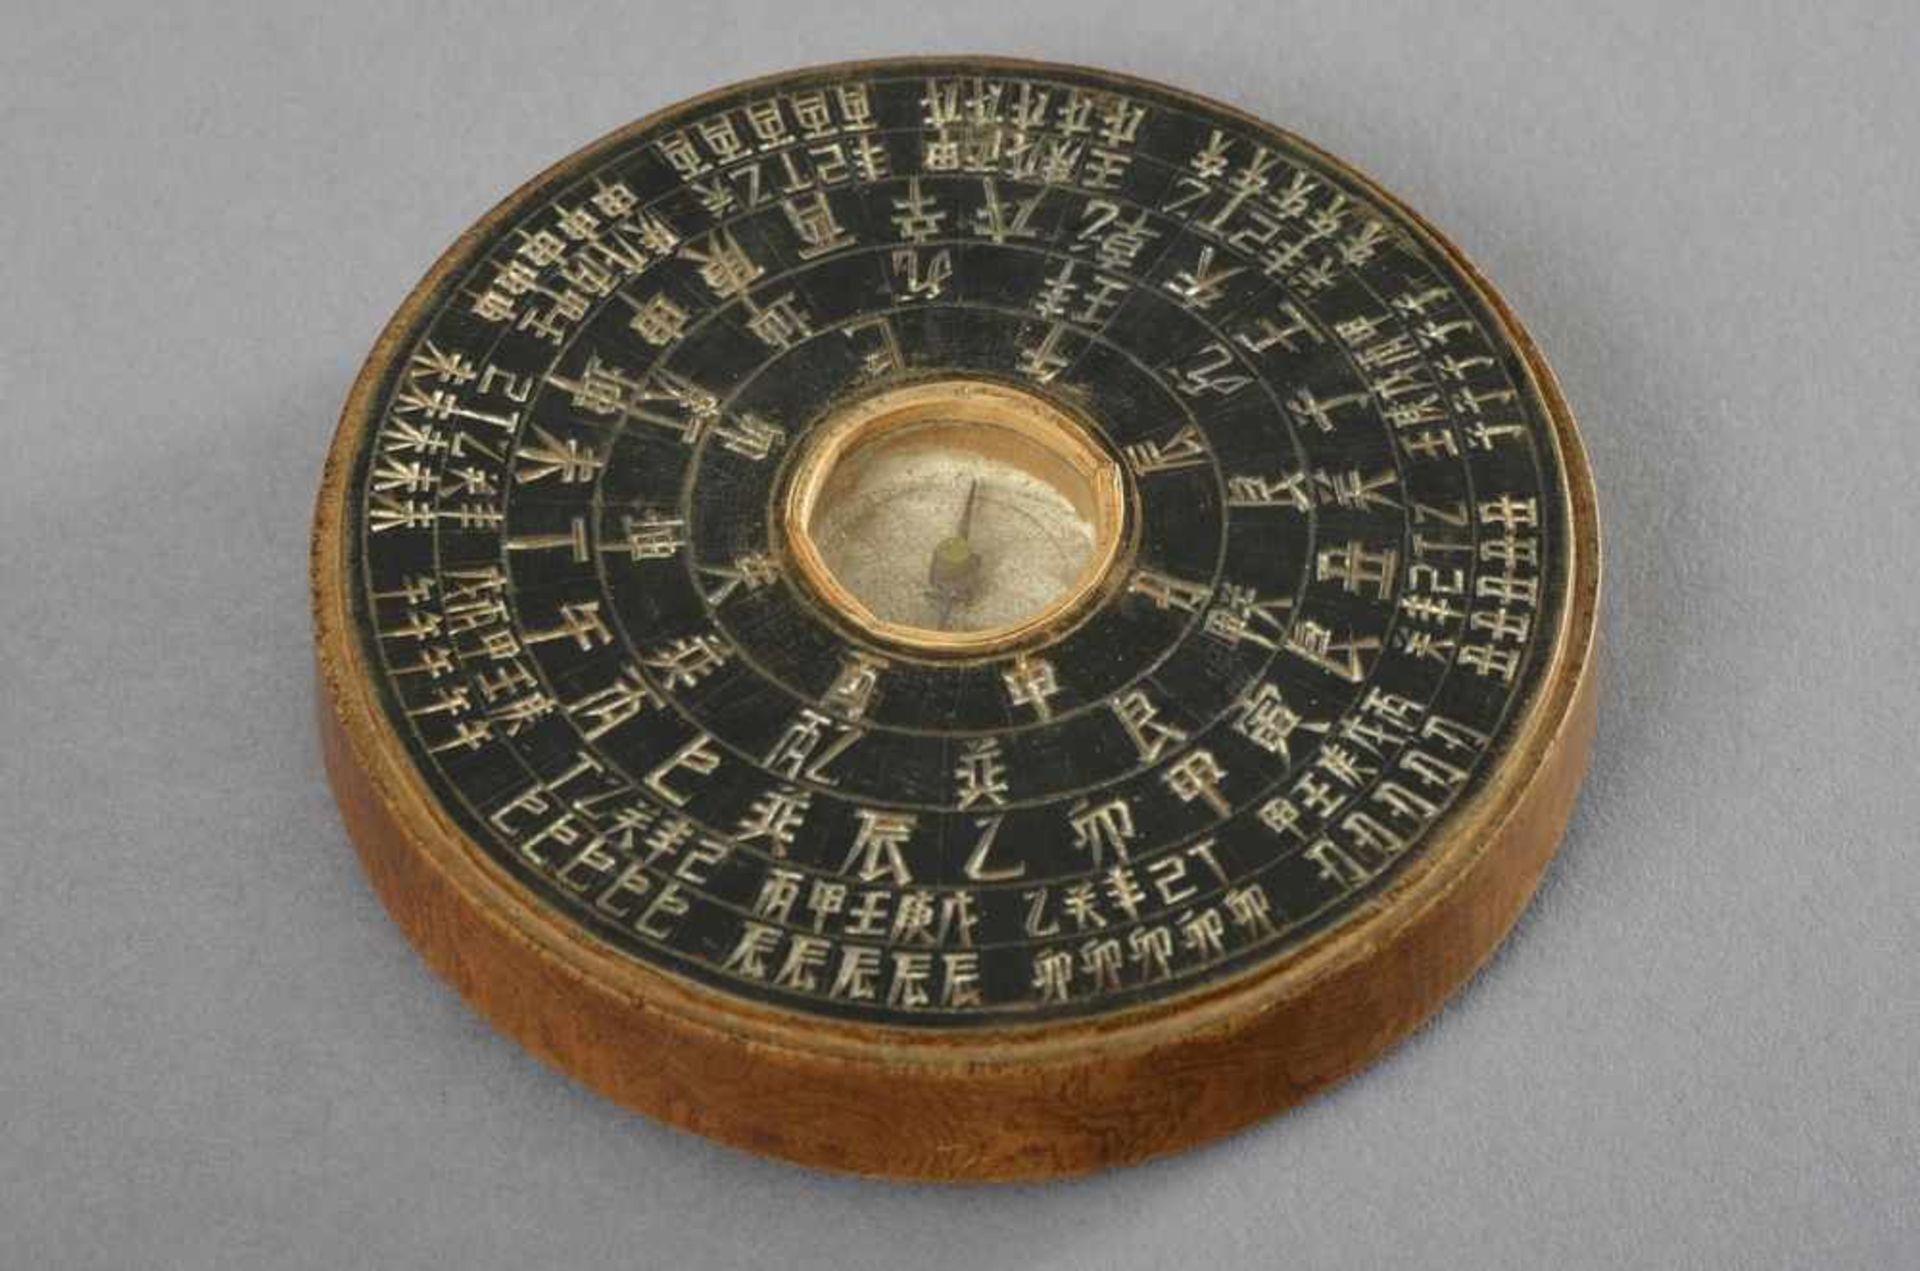 Chinesischer Kompass aus schwarz eingefärbtem Holz mit eingelassener Kompassnadel und Glasdeckel, - Bild 2 aus 3